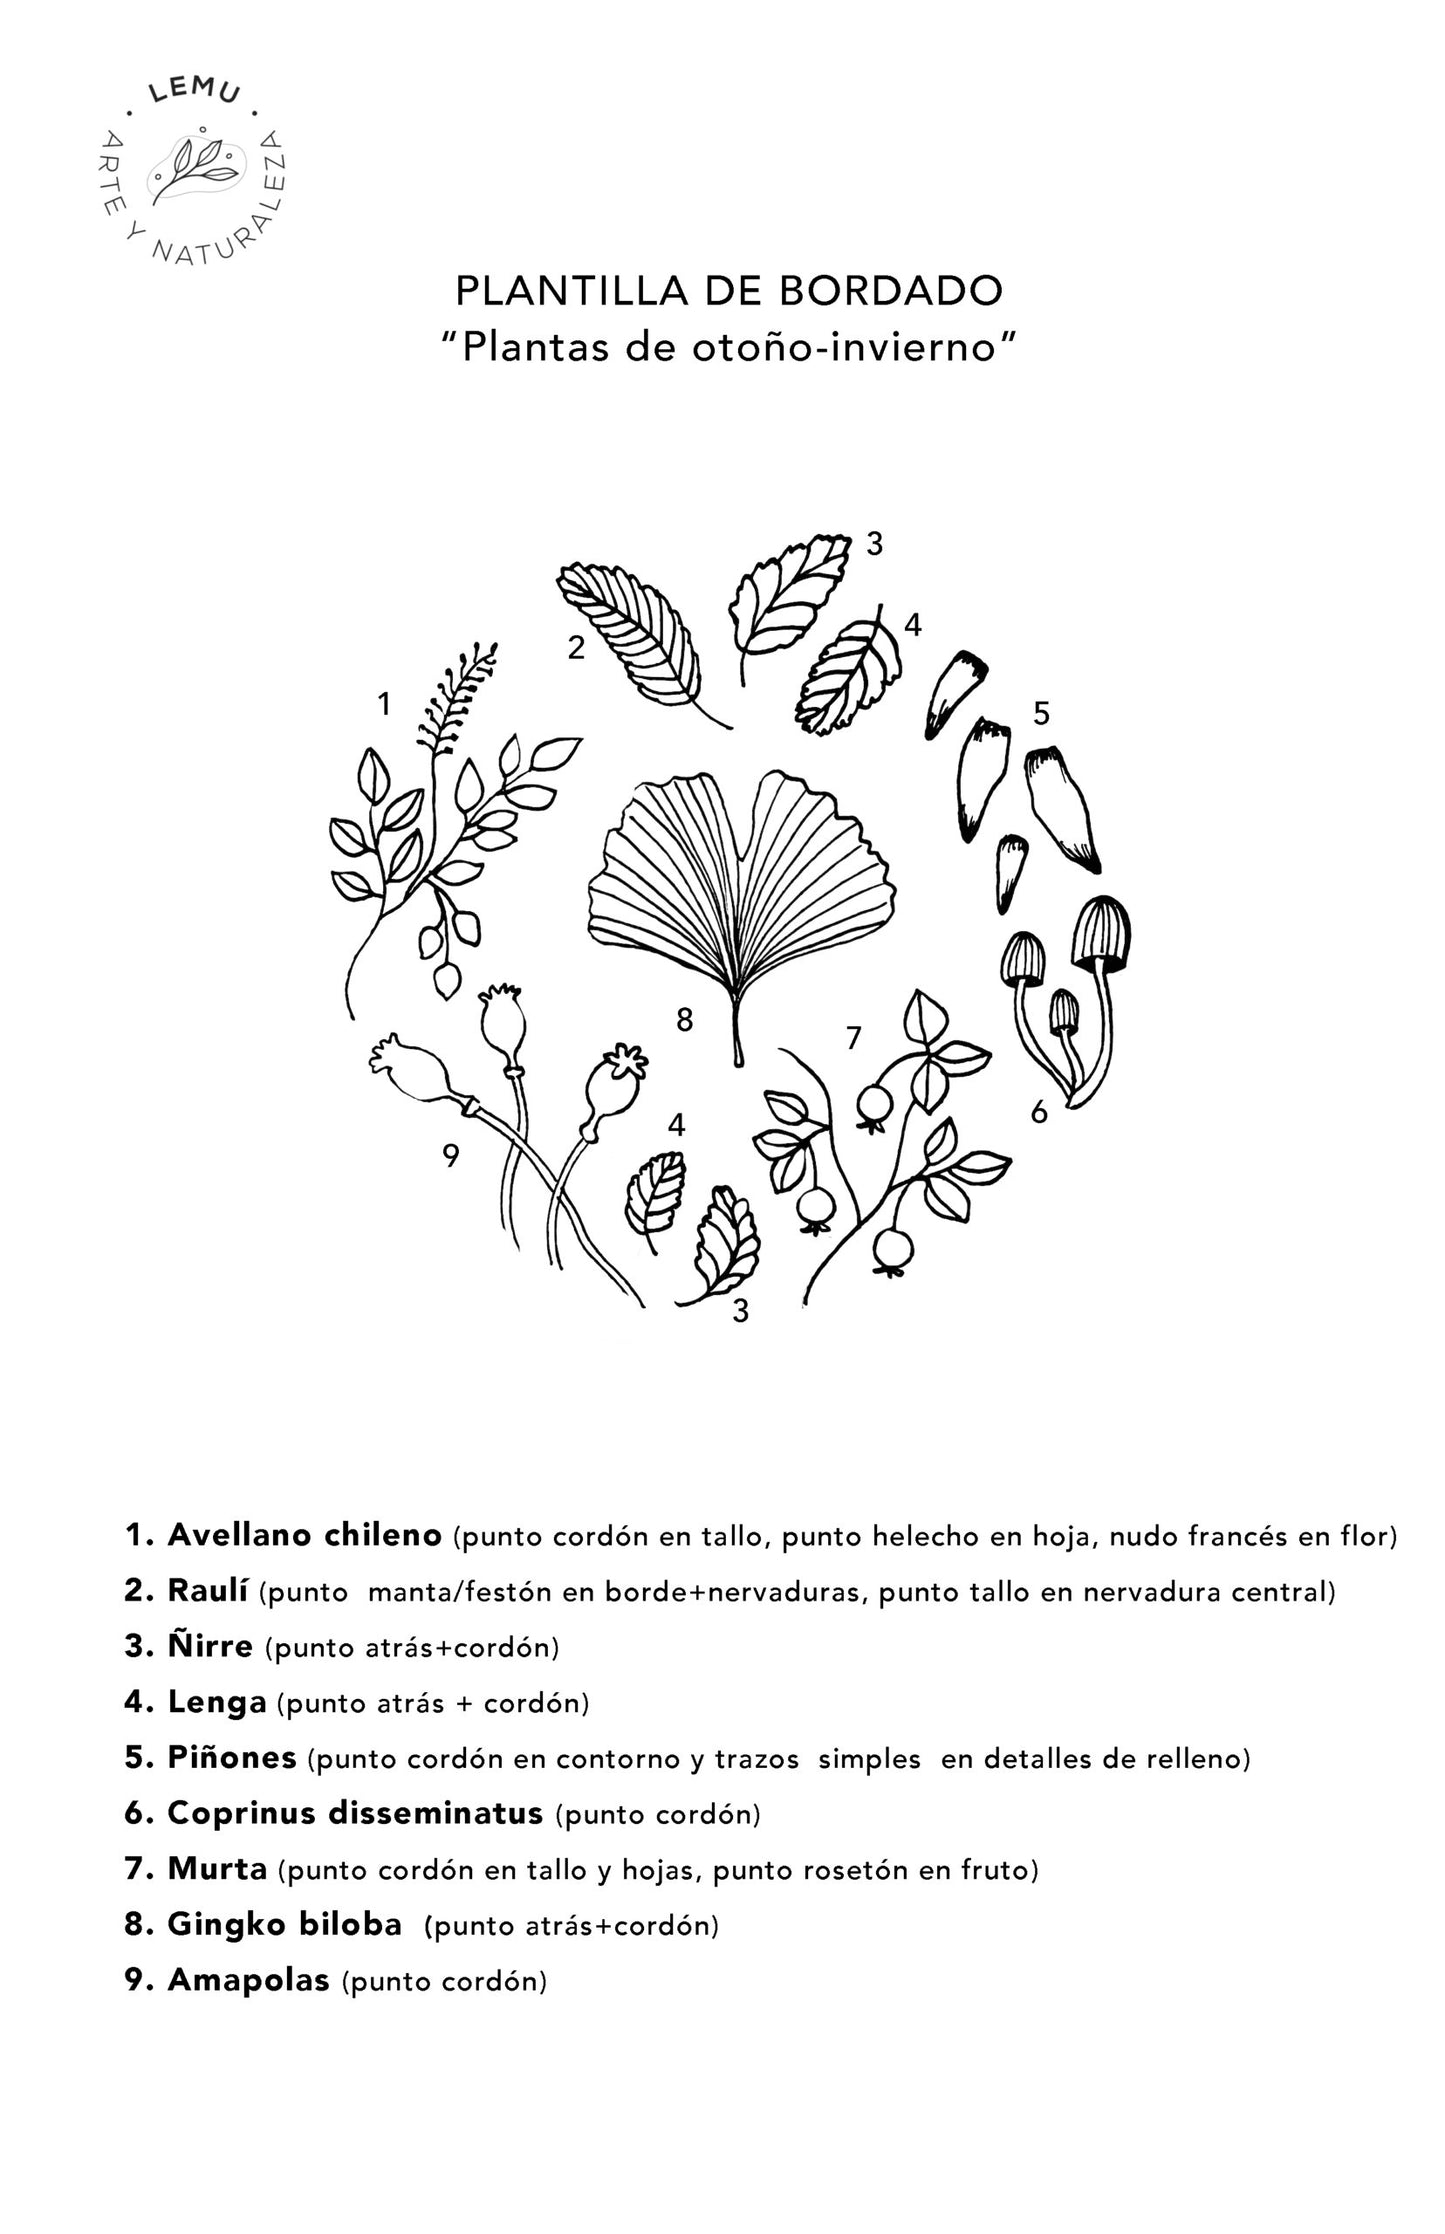 Plantillas De Bordado (Pdf) - Lemu Botánica